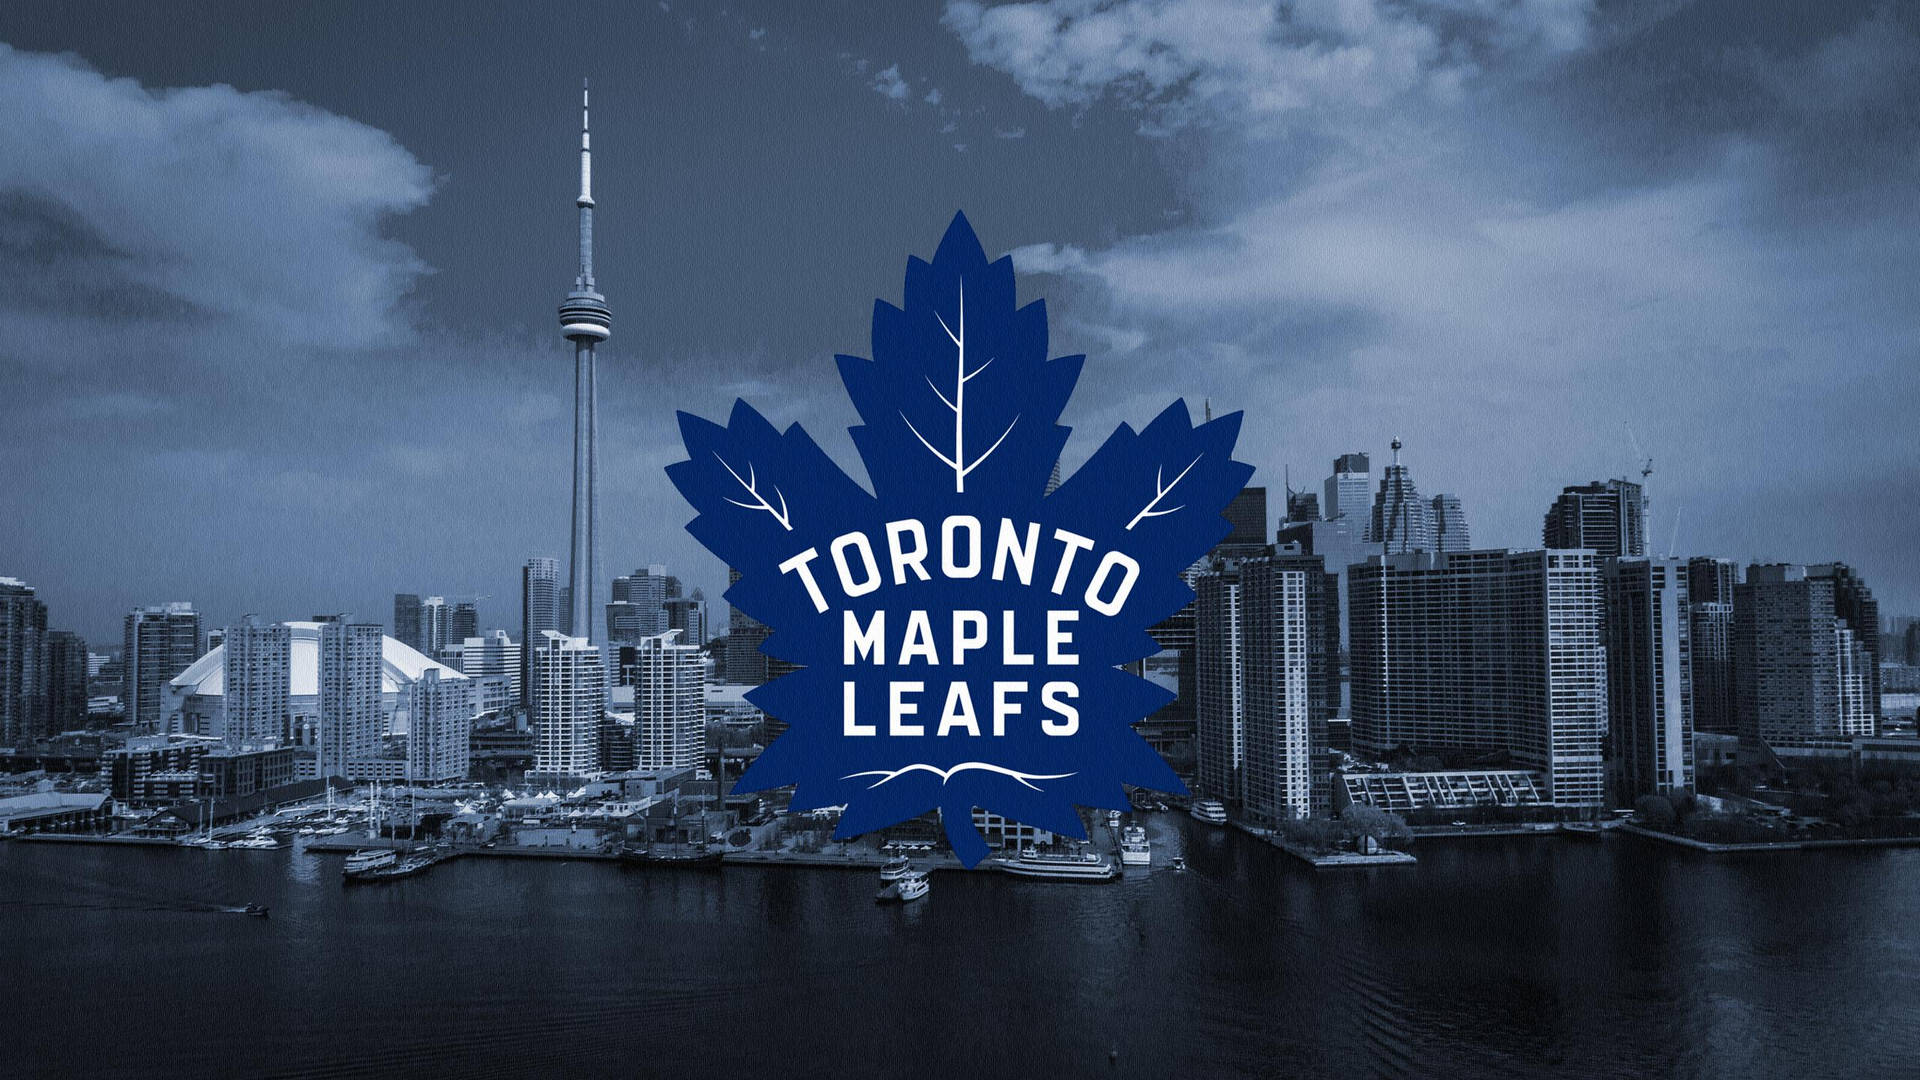 Imágenes De Toronto Maple Leafs